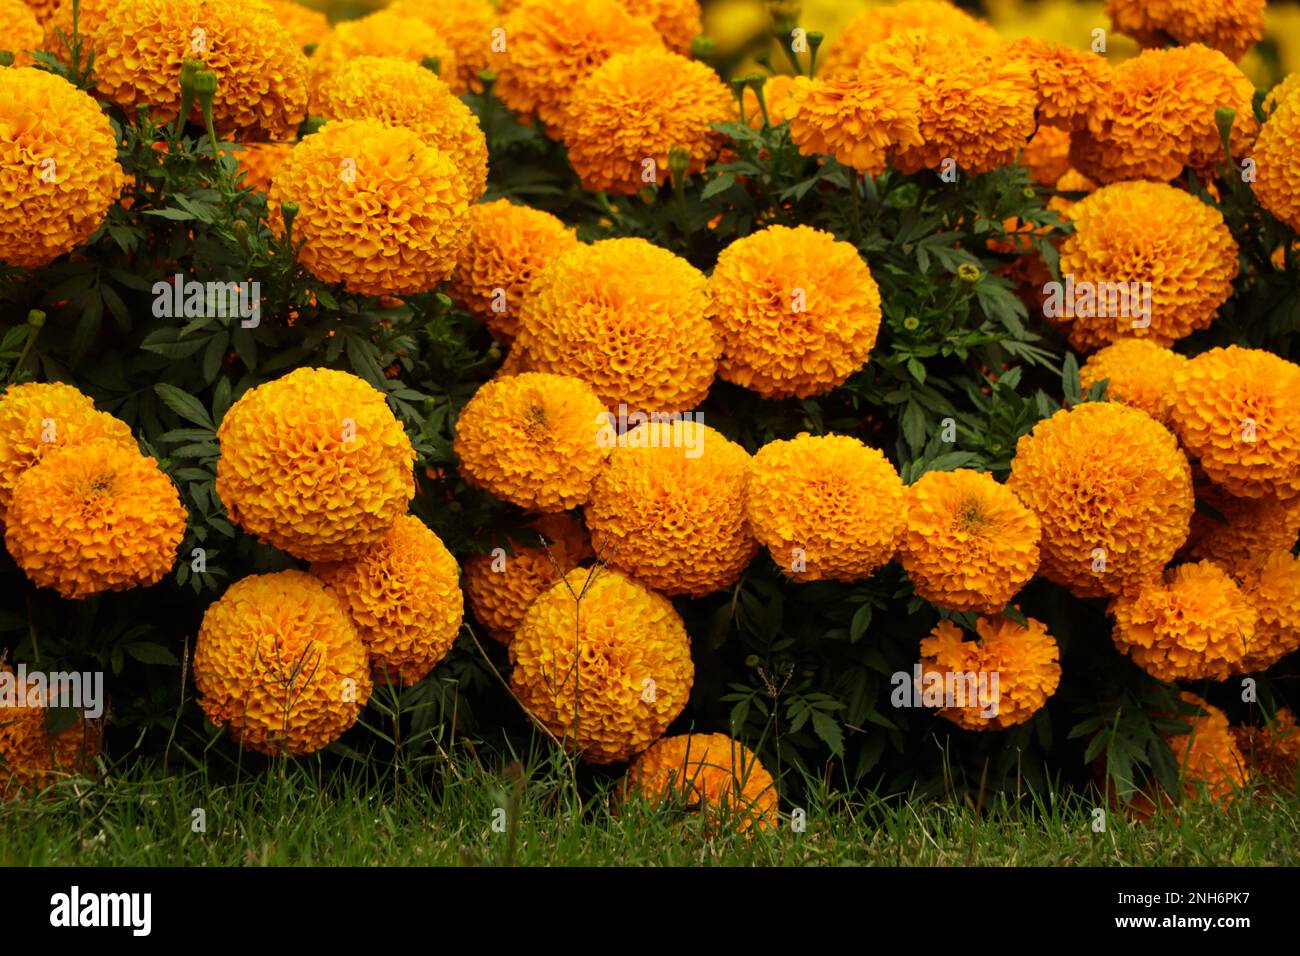 Nel giardino c'erano molti splendidi fiori. Sono spesso chiamati marigold messicano, azteco o africano (Tagetes erecta). Foto Stock